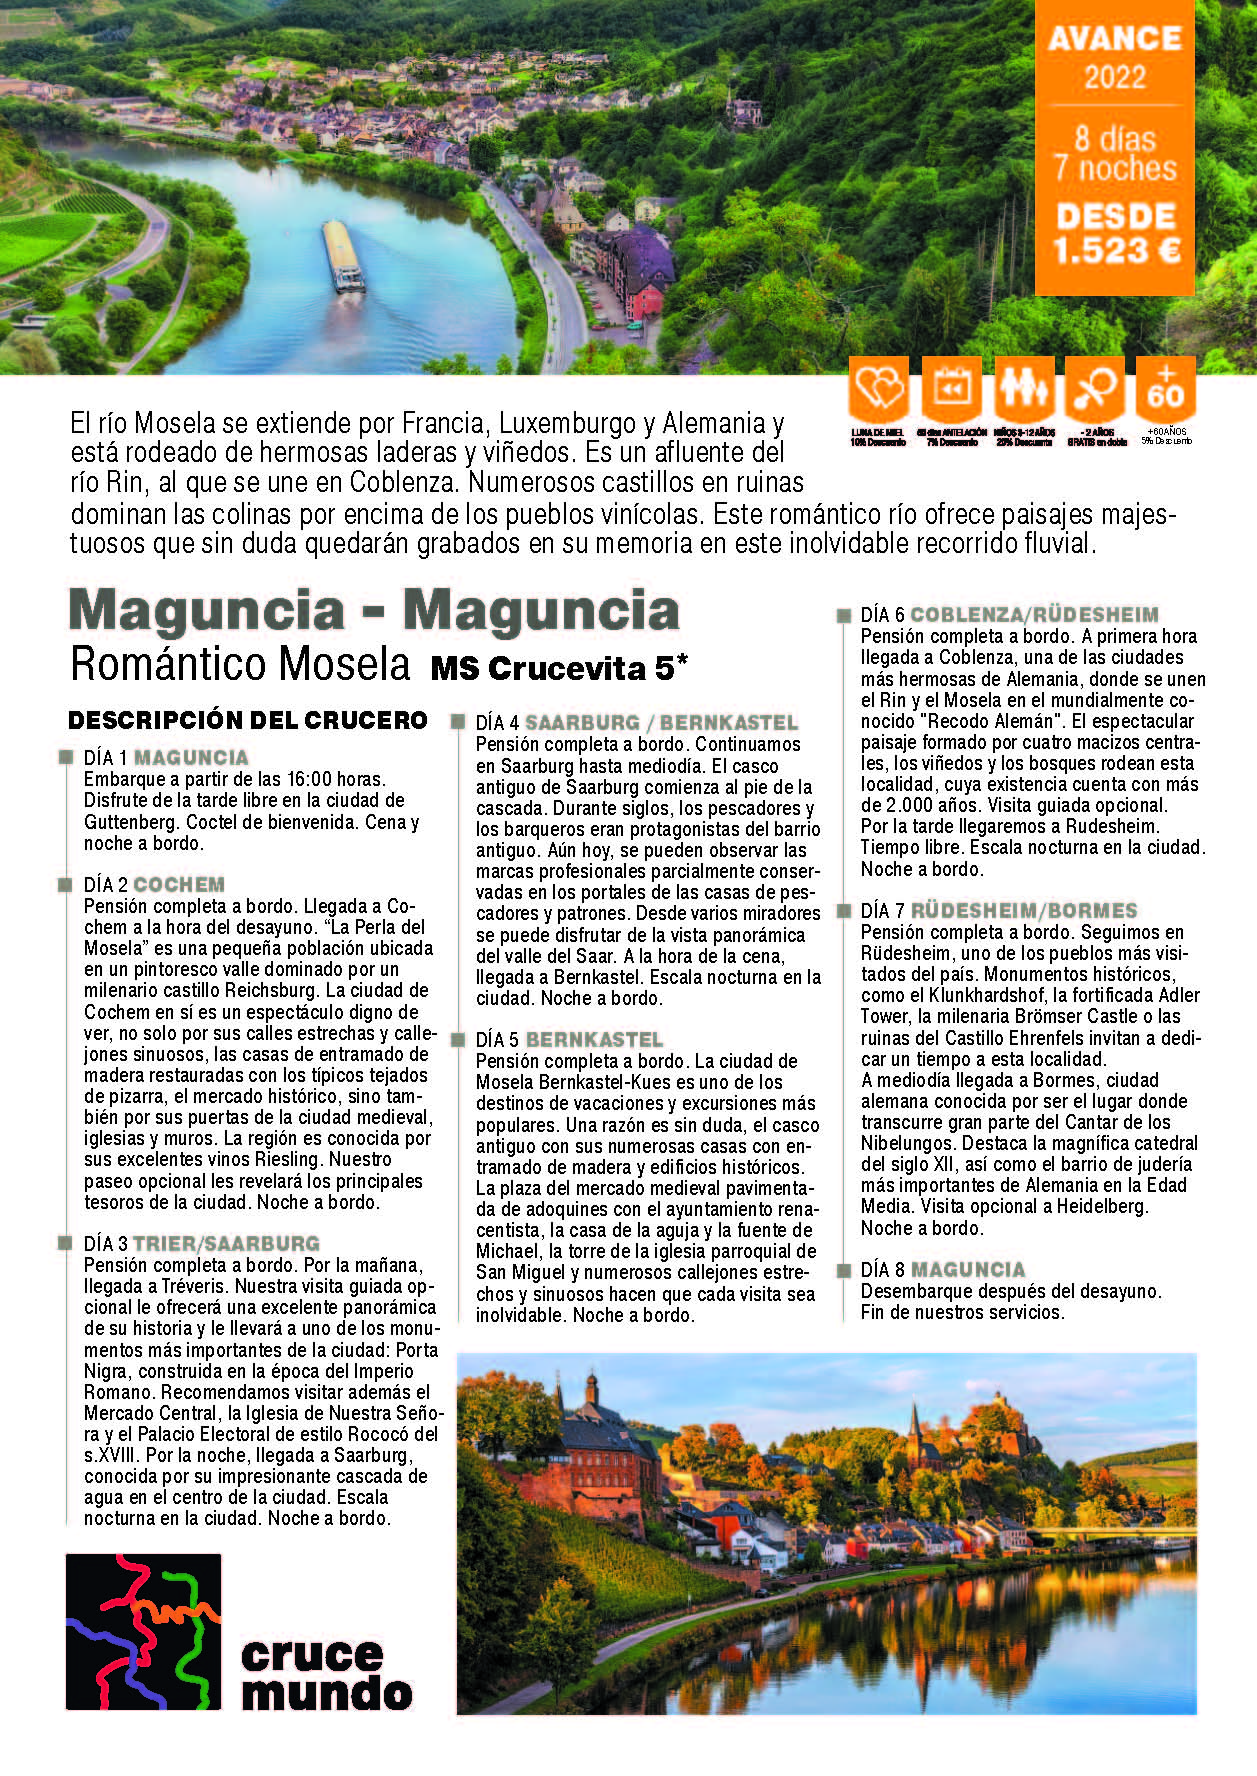 Oferta Crucemundo Romantico Mosela verano 2022 de Maguncia a Maguncia